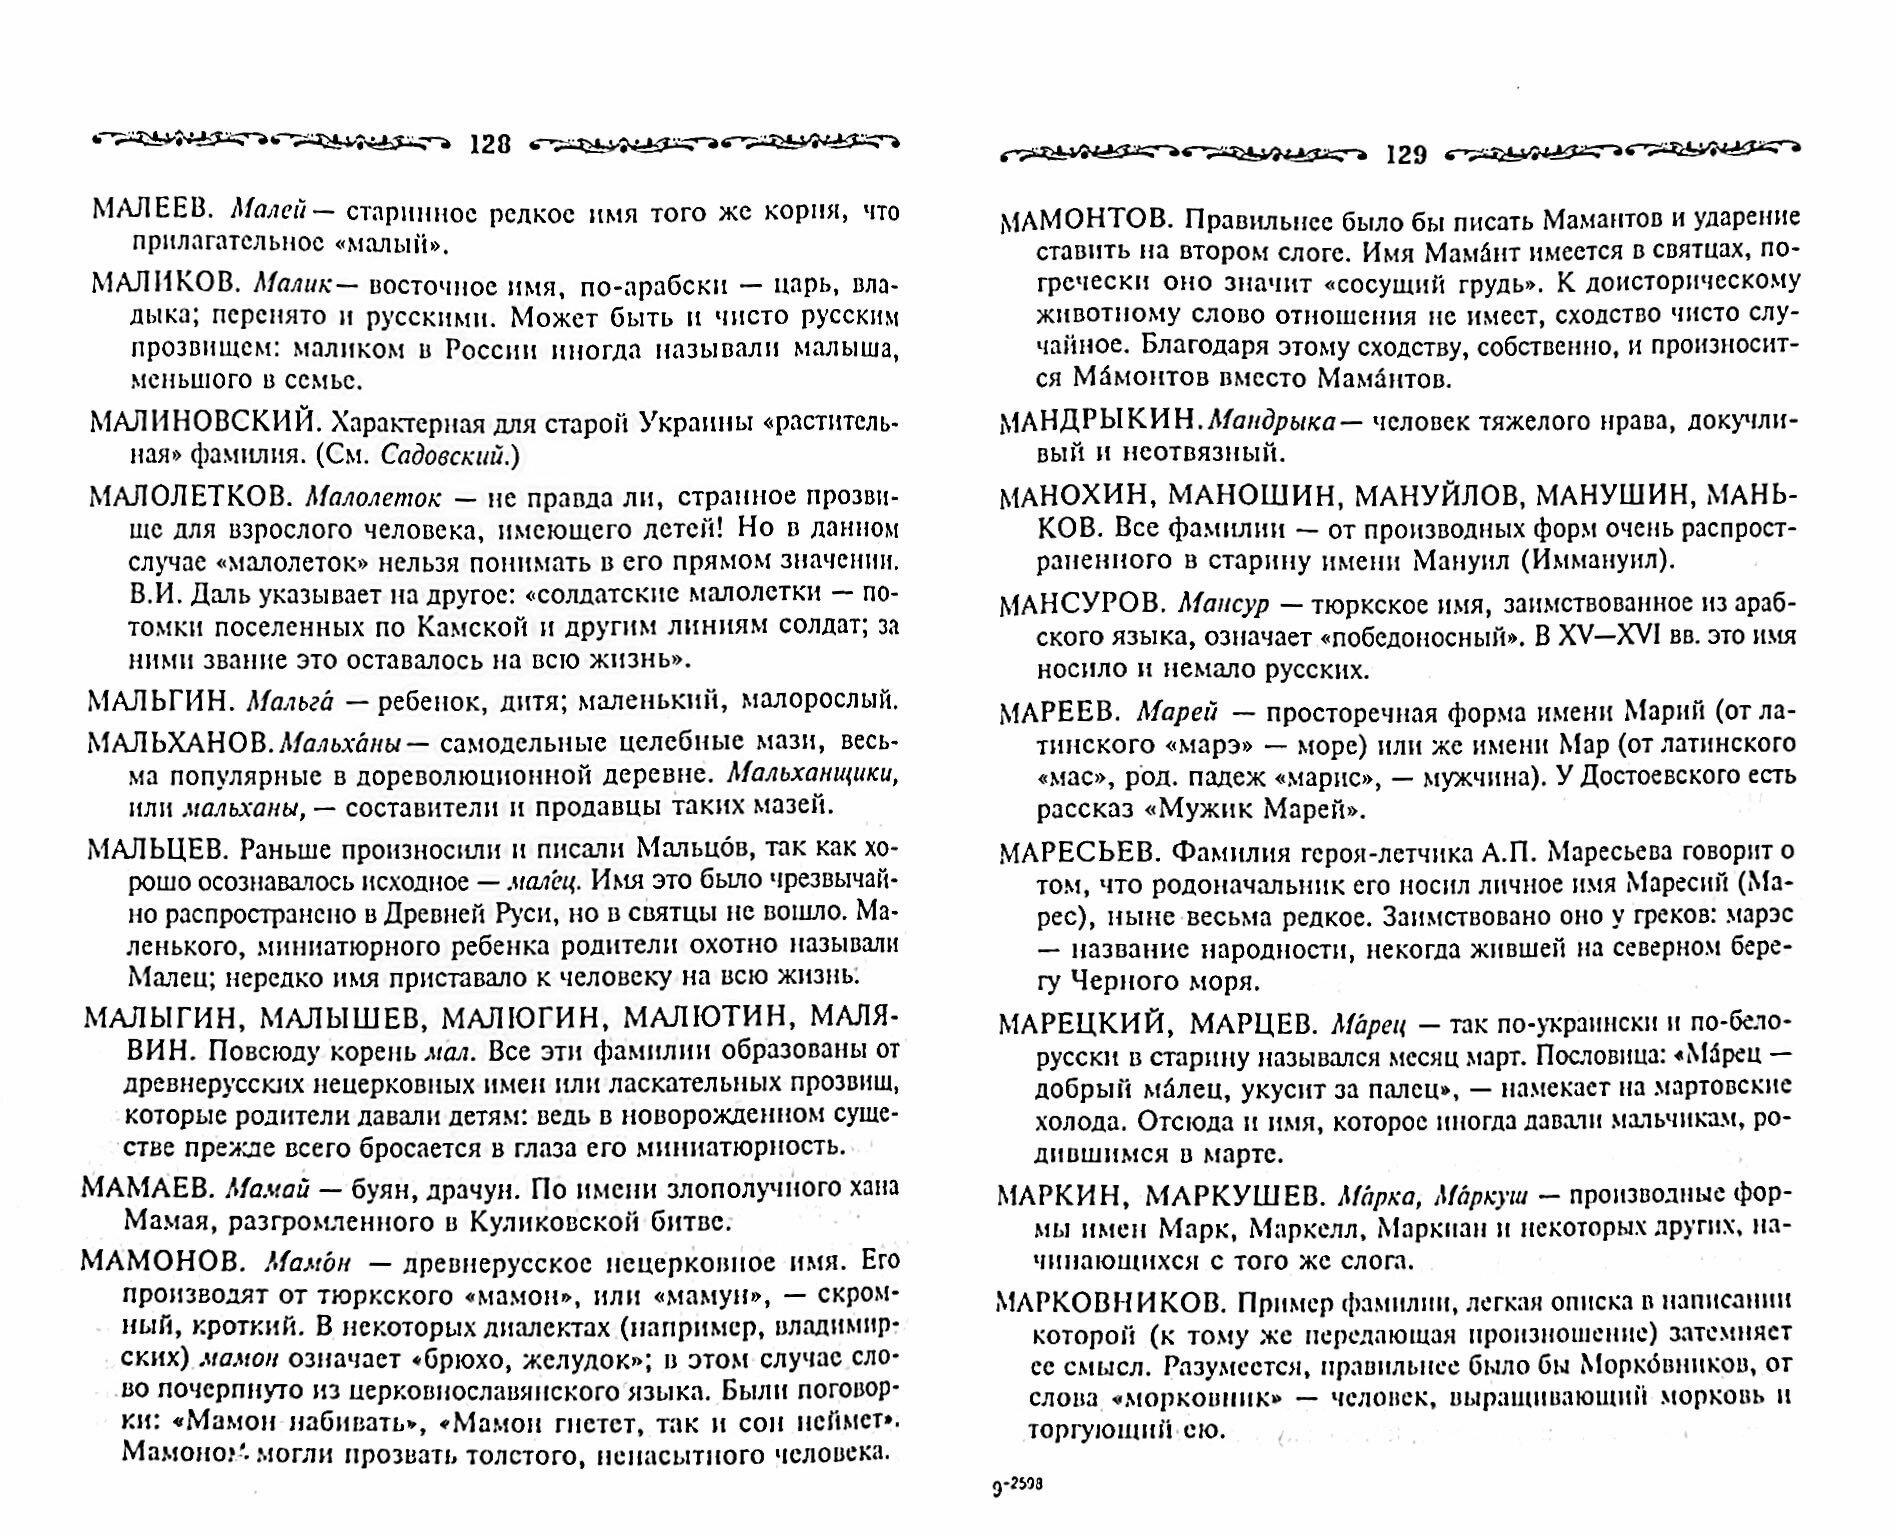 Русские фамилии. Популярный этимологический словарь - фото №2